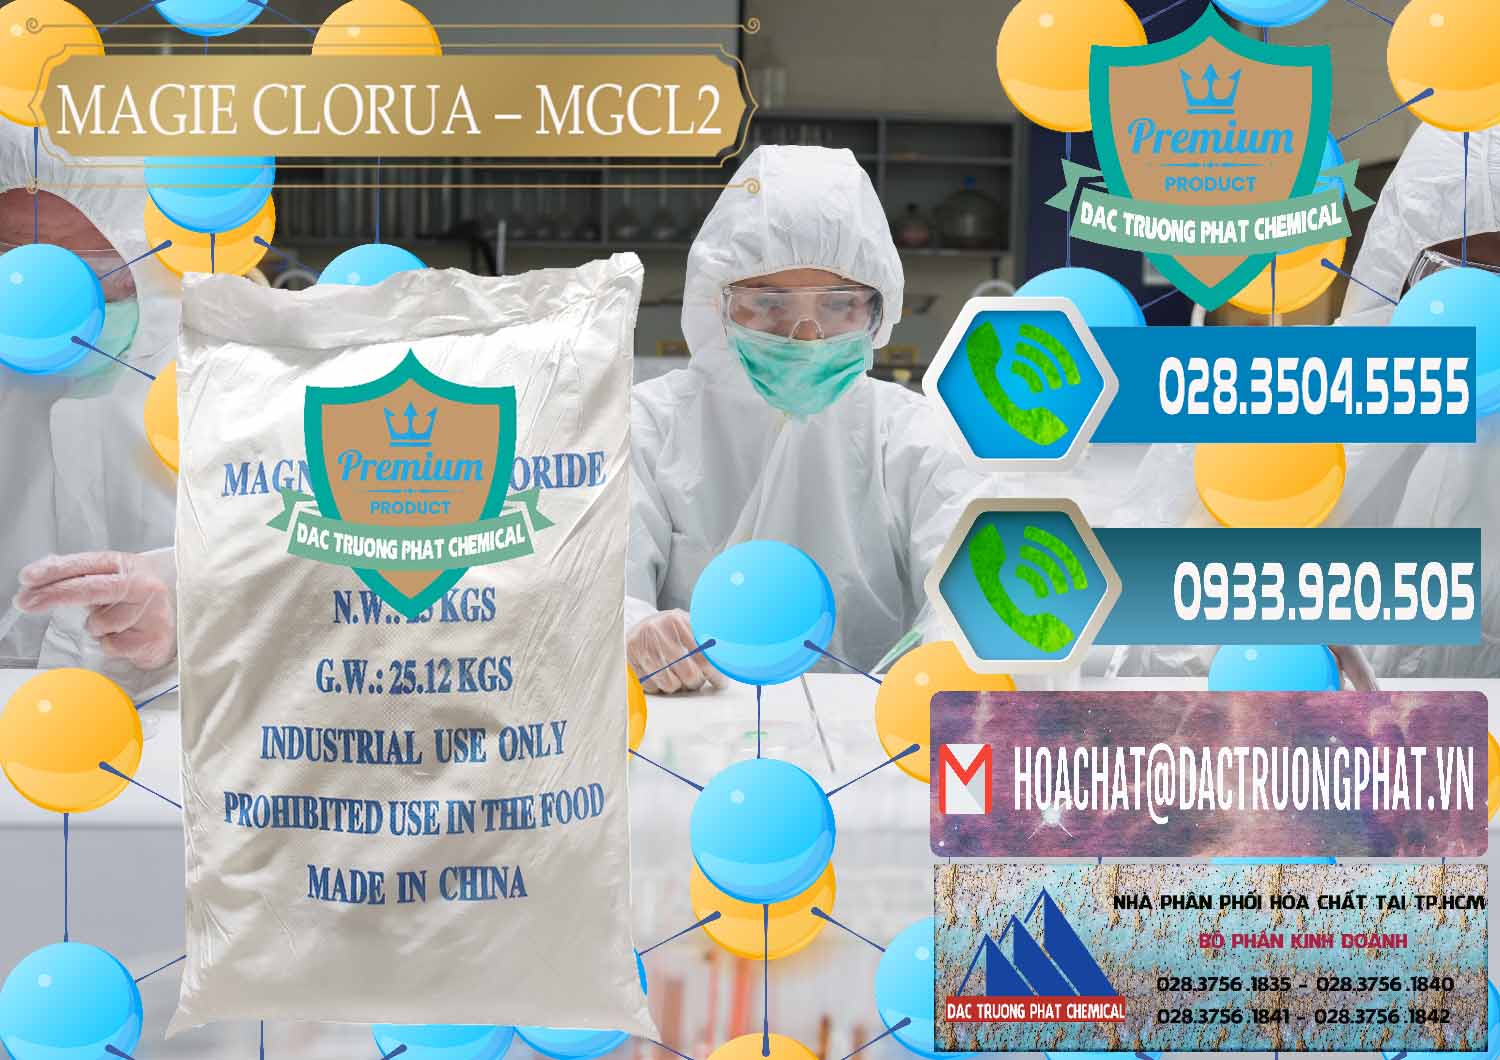 Cty bán _ cung ứng Magie Clorua – MGCL2 96% Dạng Vảy Trung Quốc China - 0091 - Công ty cung cấp & bán hóa chất tại TP.HCM - congtyhoachat.net